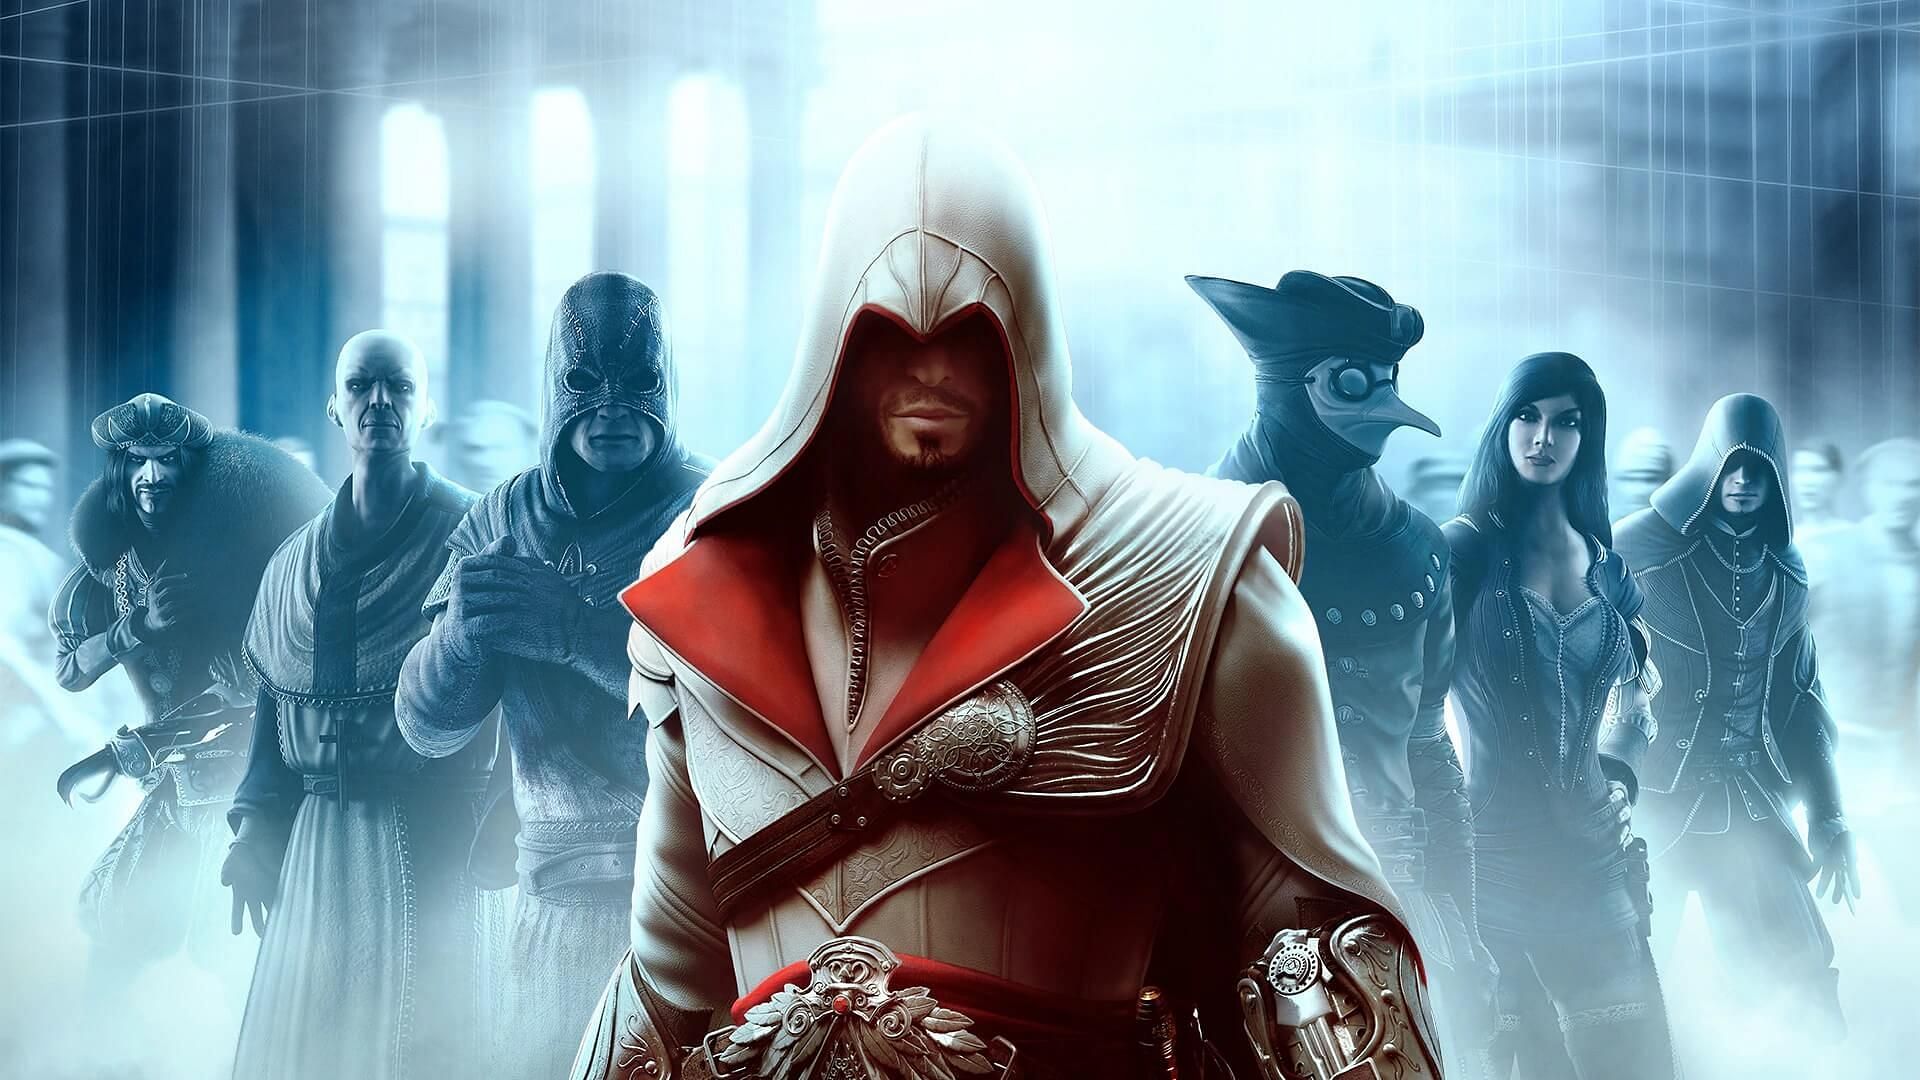 Ezio Auditore da Firenze (Image via Ubisoft)